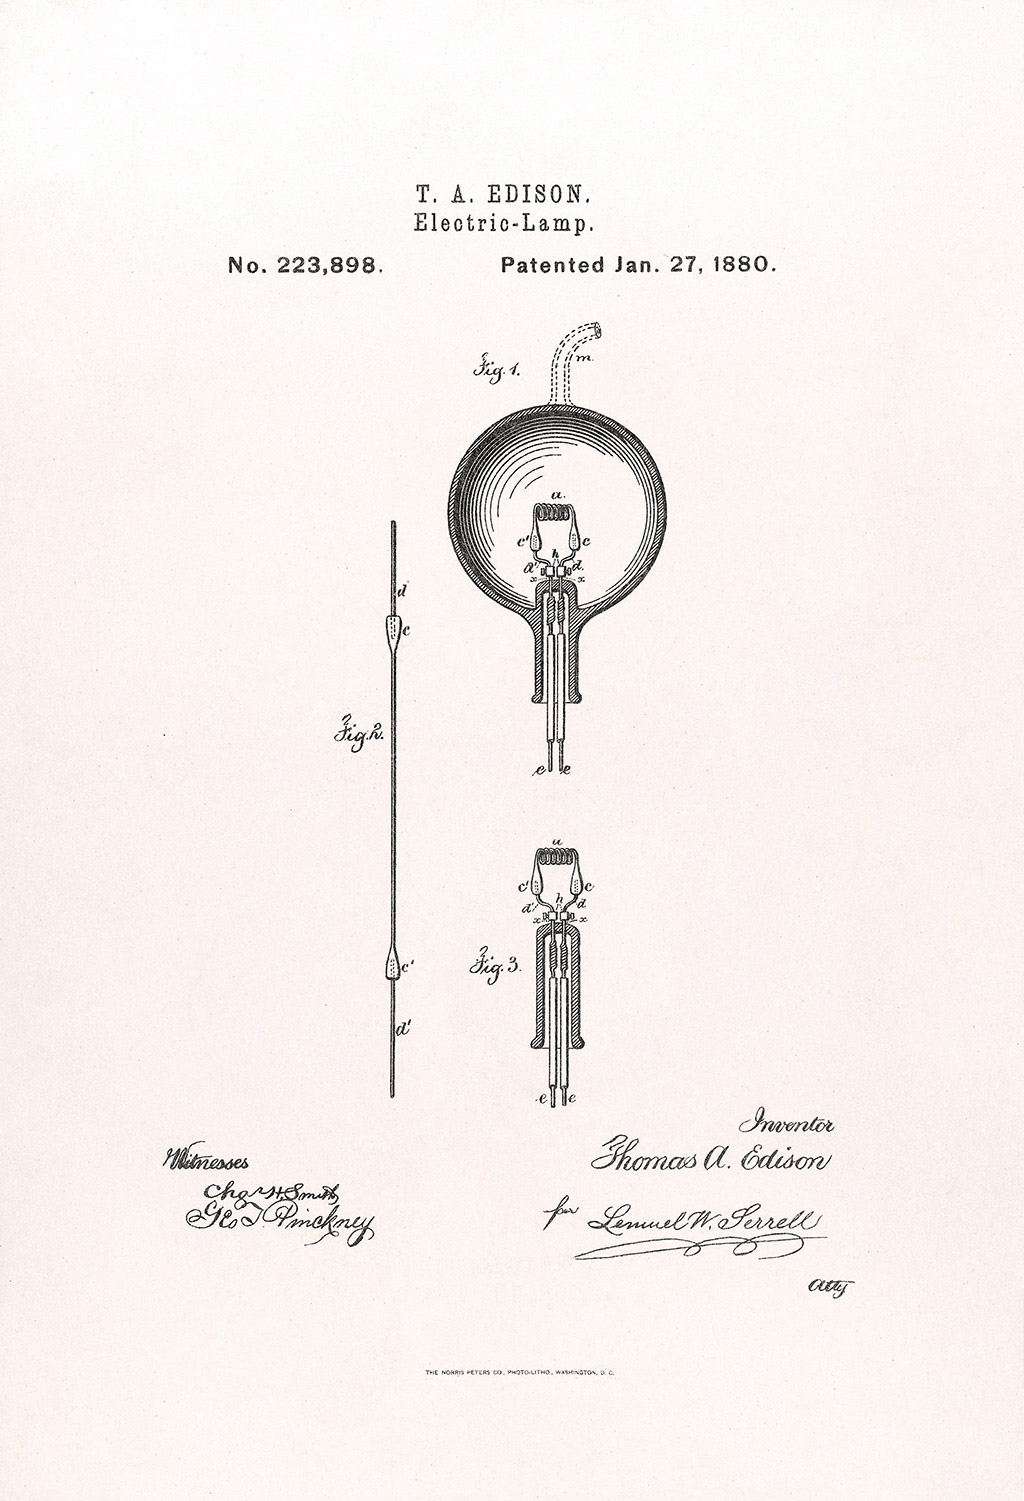 Elektrik ampulün 223898 numaralı ve 27 Ocak 1880 tarihli patent belgesi.